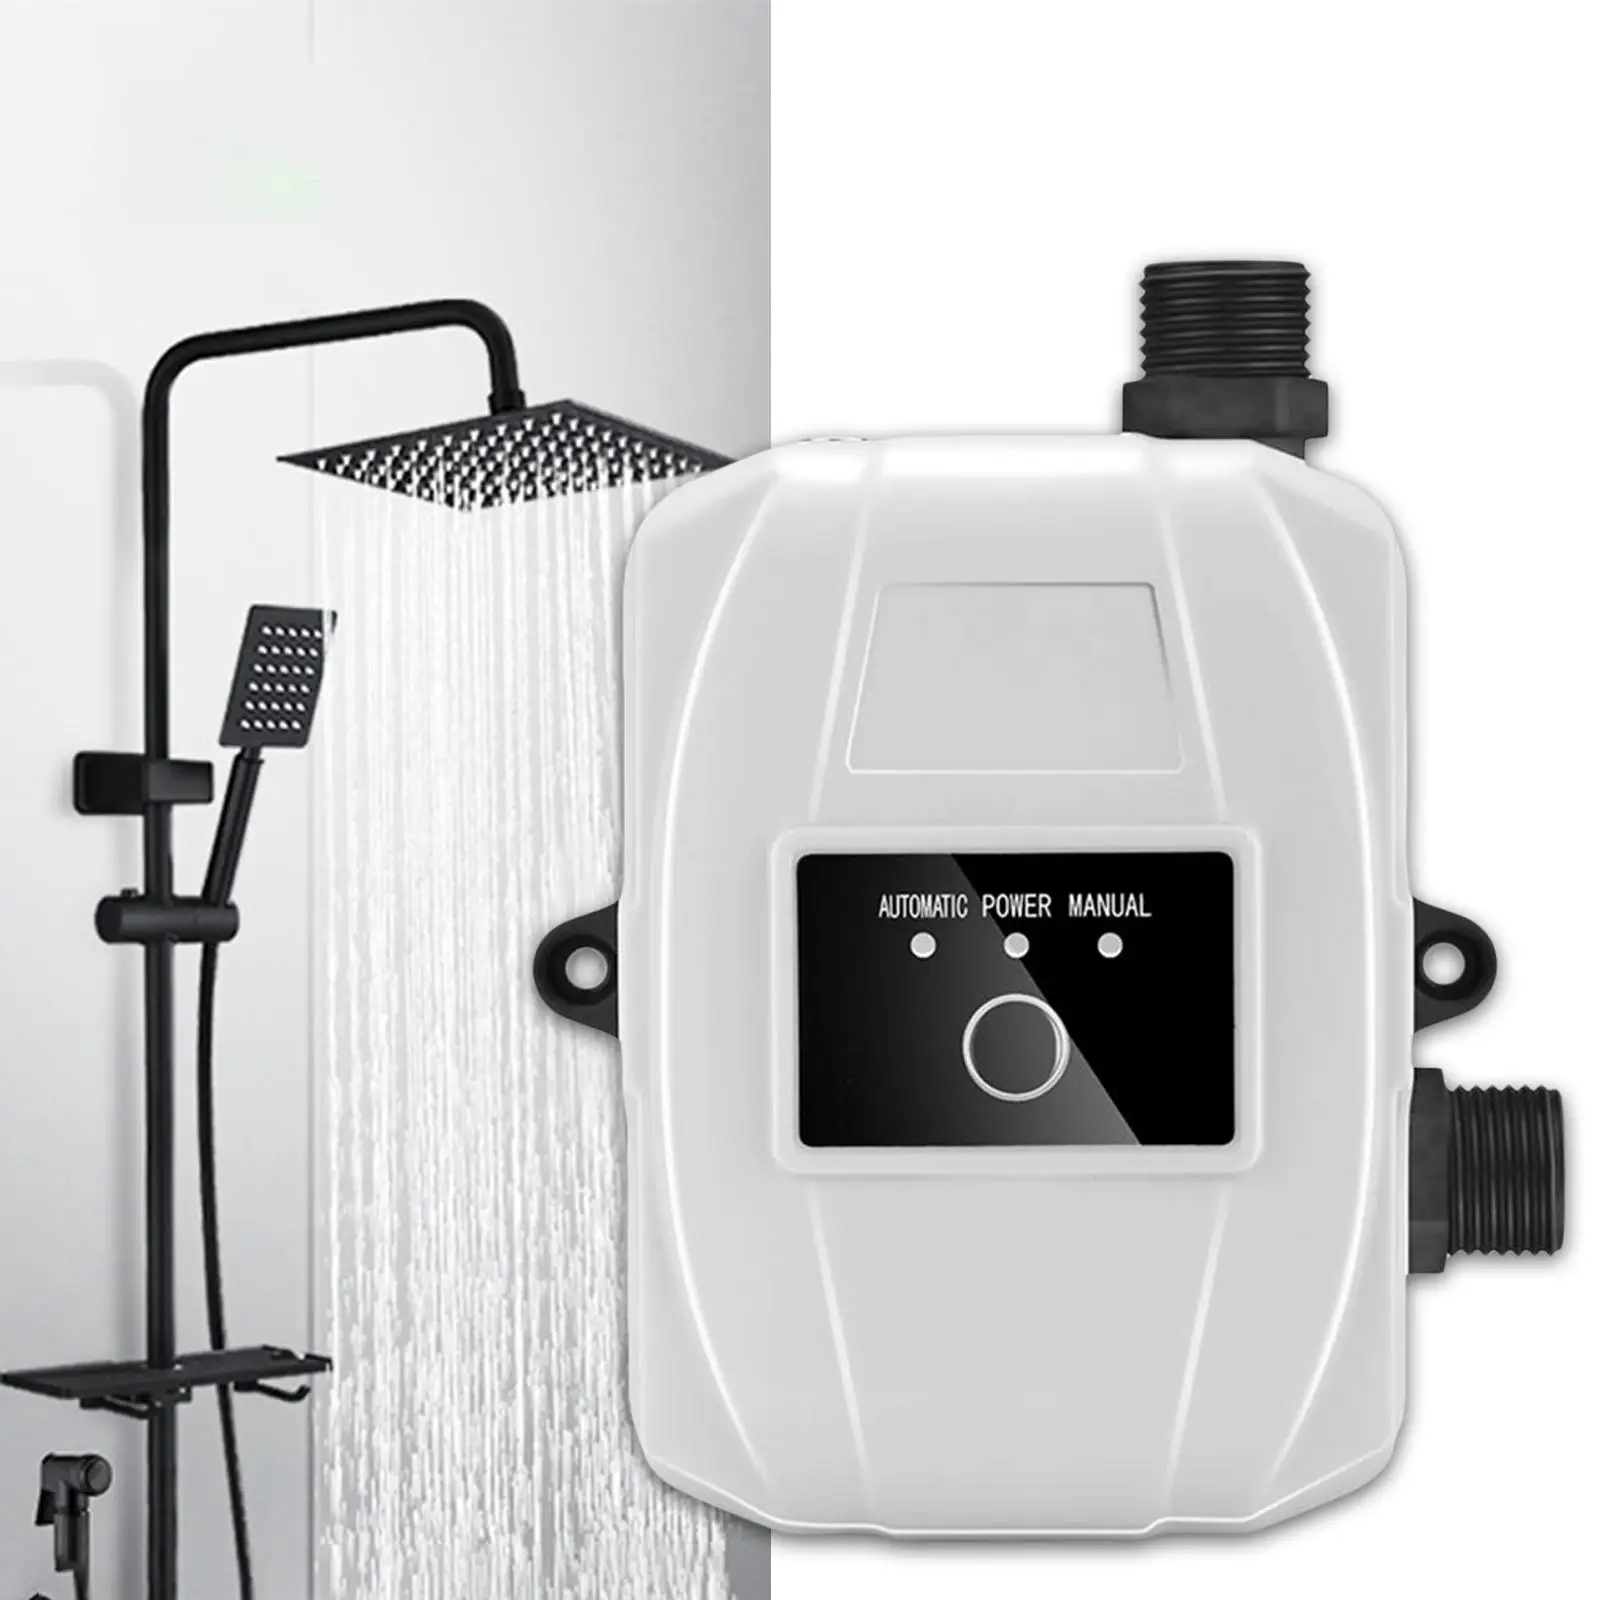 Water Pressure Booster Pump Silent Water Pump for Kitchen Sink Bathroom Home Shower